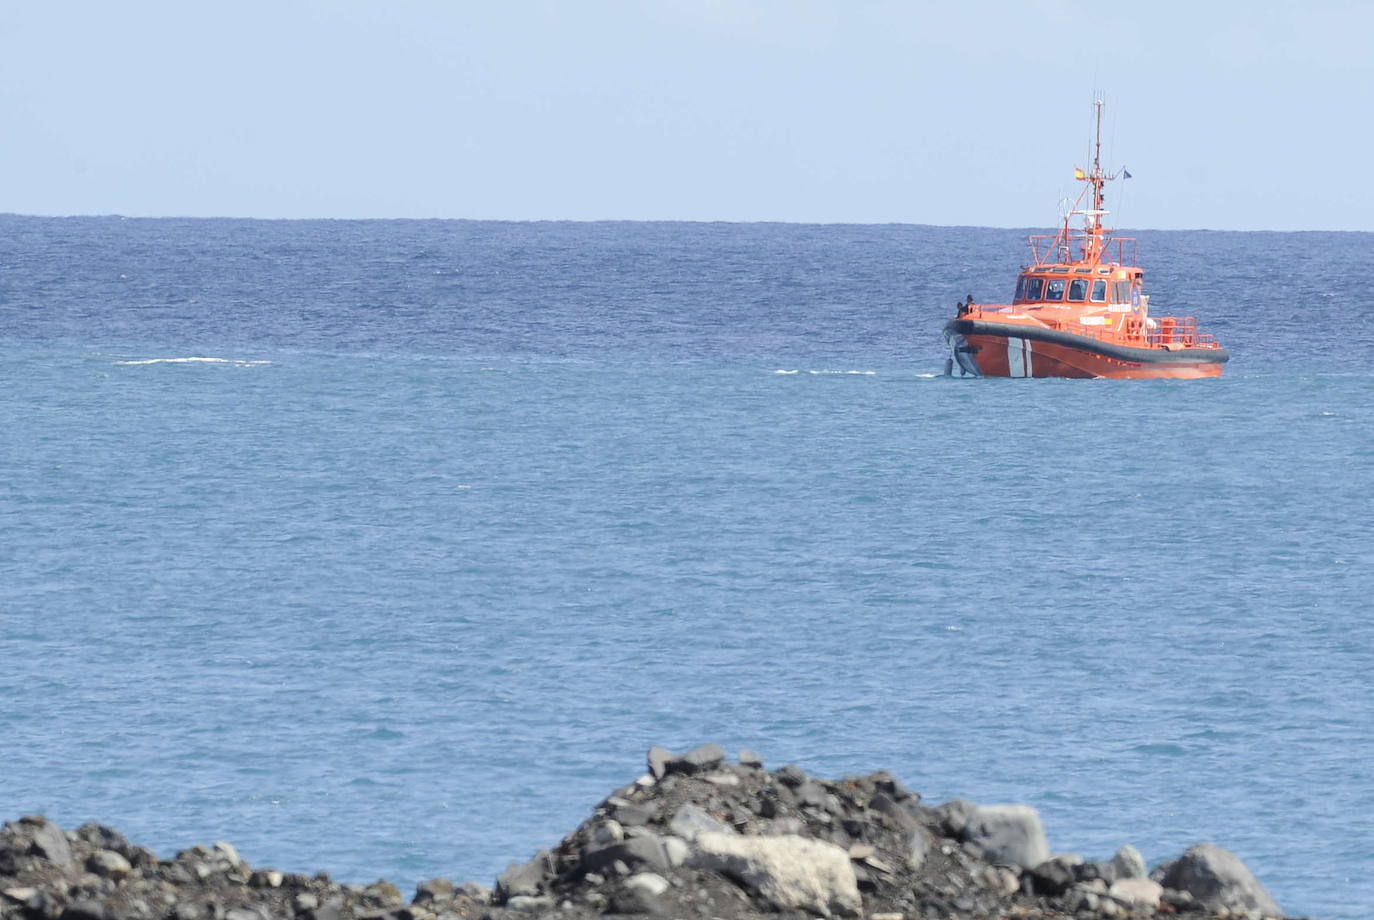 Naufragio en el sur de Gran Canaria: hallan a un hombre flotando sobre un bidón